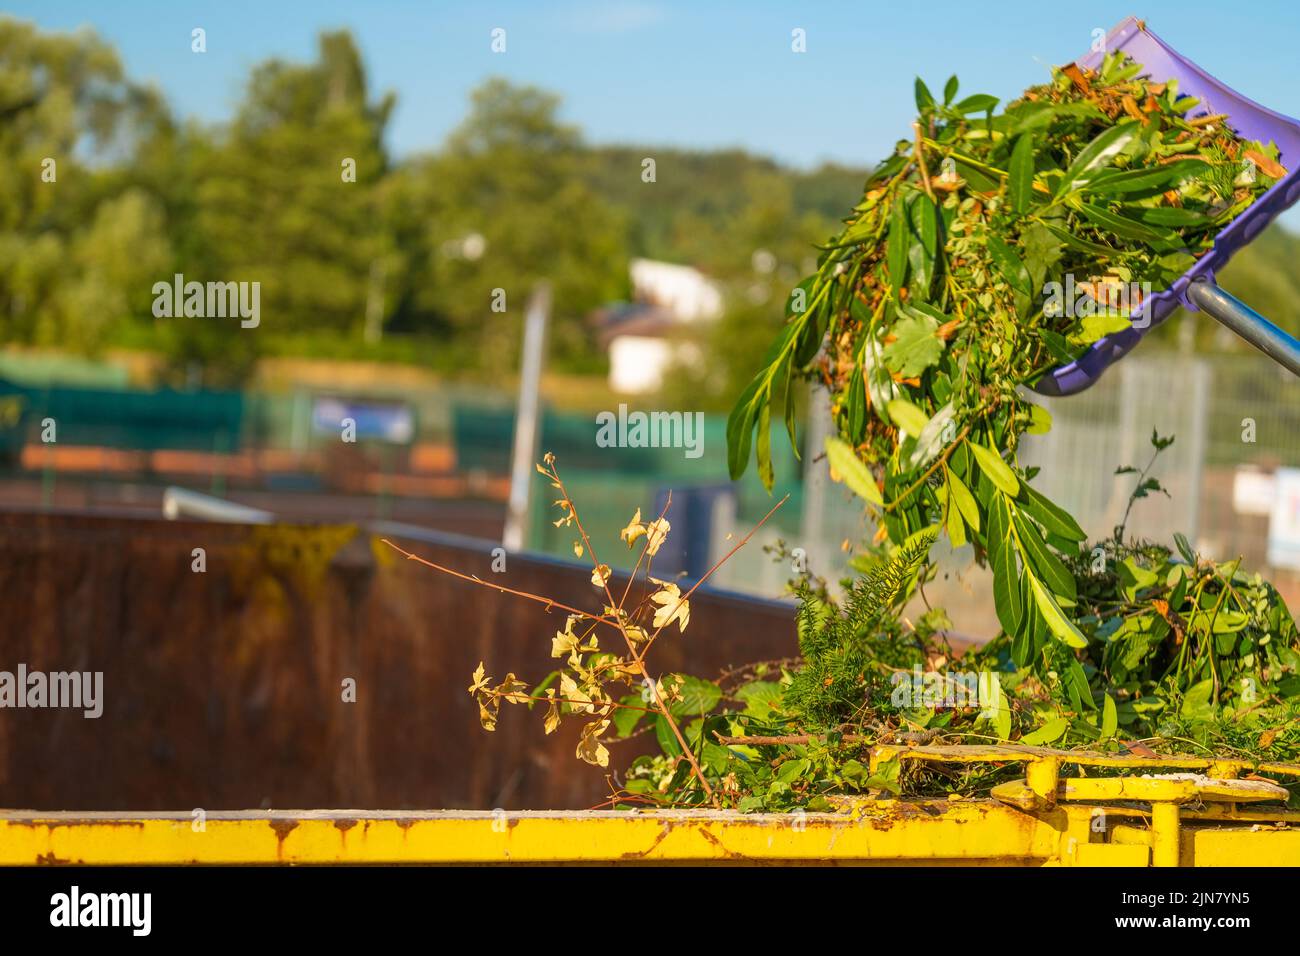 Grüner Kompost auf der Bratschaufel gießt in eine tank.compost mit anderer Pflanze. Zweige, Blätter und Staub in einem Müllcontainer.Gemüsekompost .Bio Stockfoto